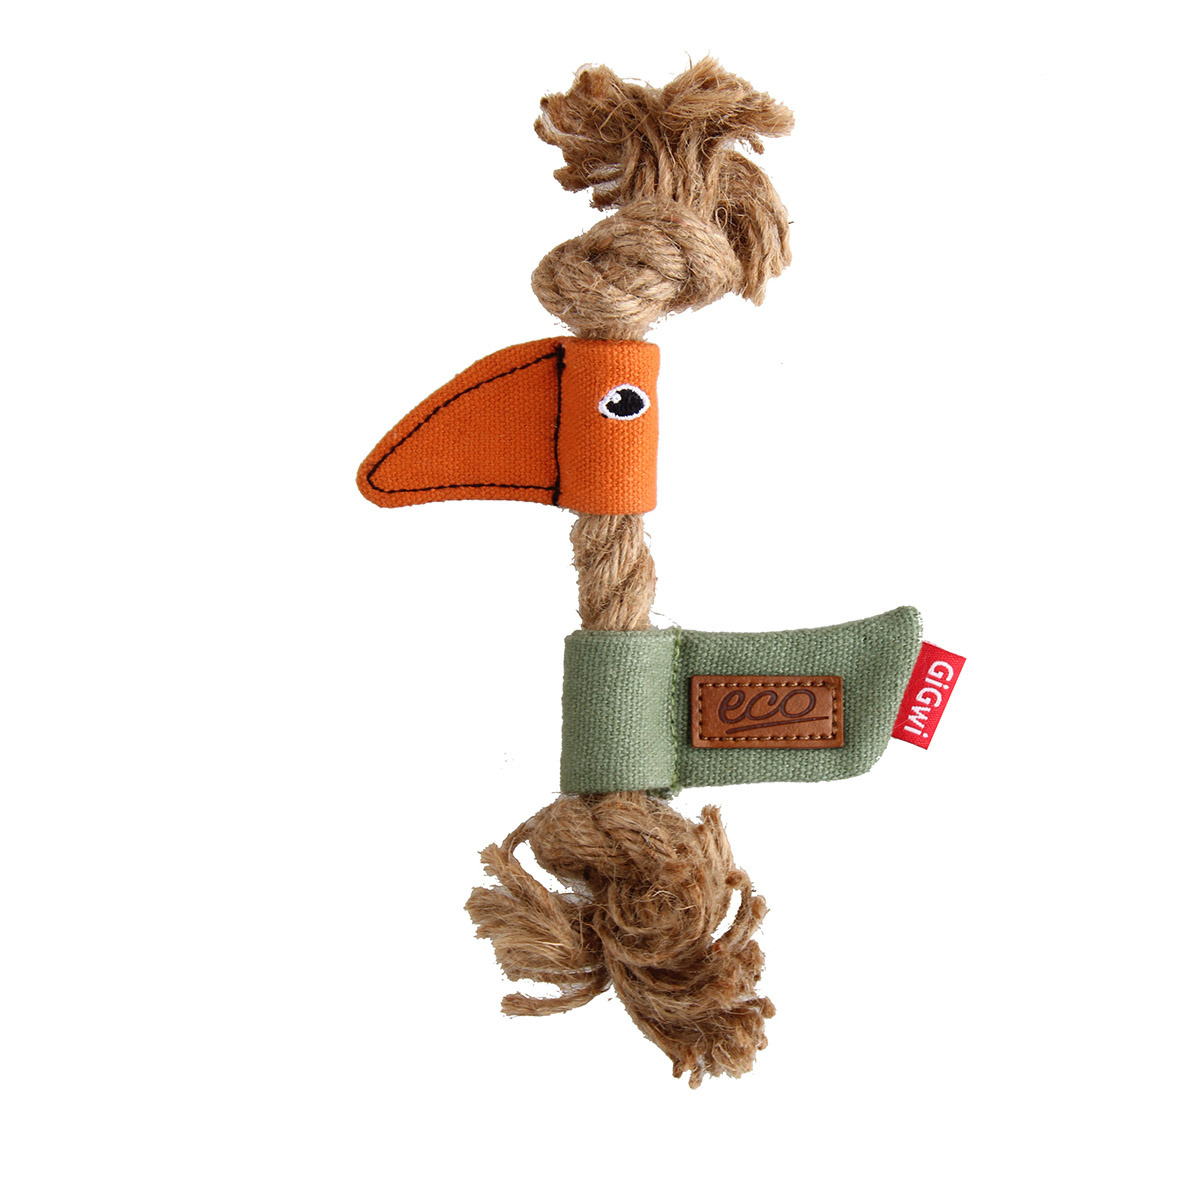 GiGwi GiGwi игрушка Птичка (30 г) gigwi gigwi игрушка птичка с перьями ткань перо 30 г